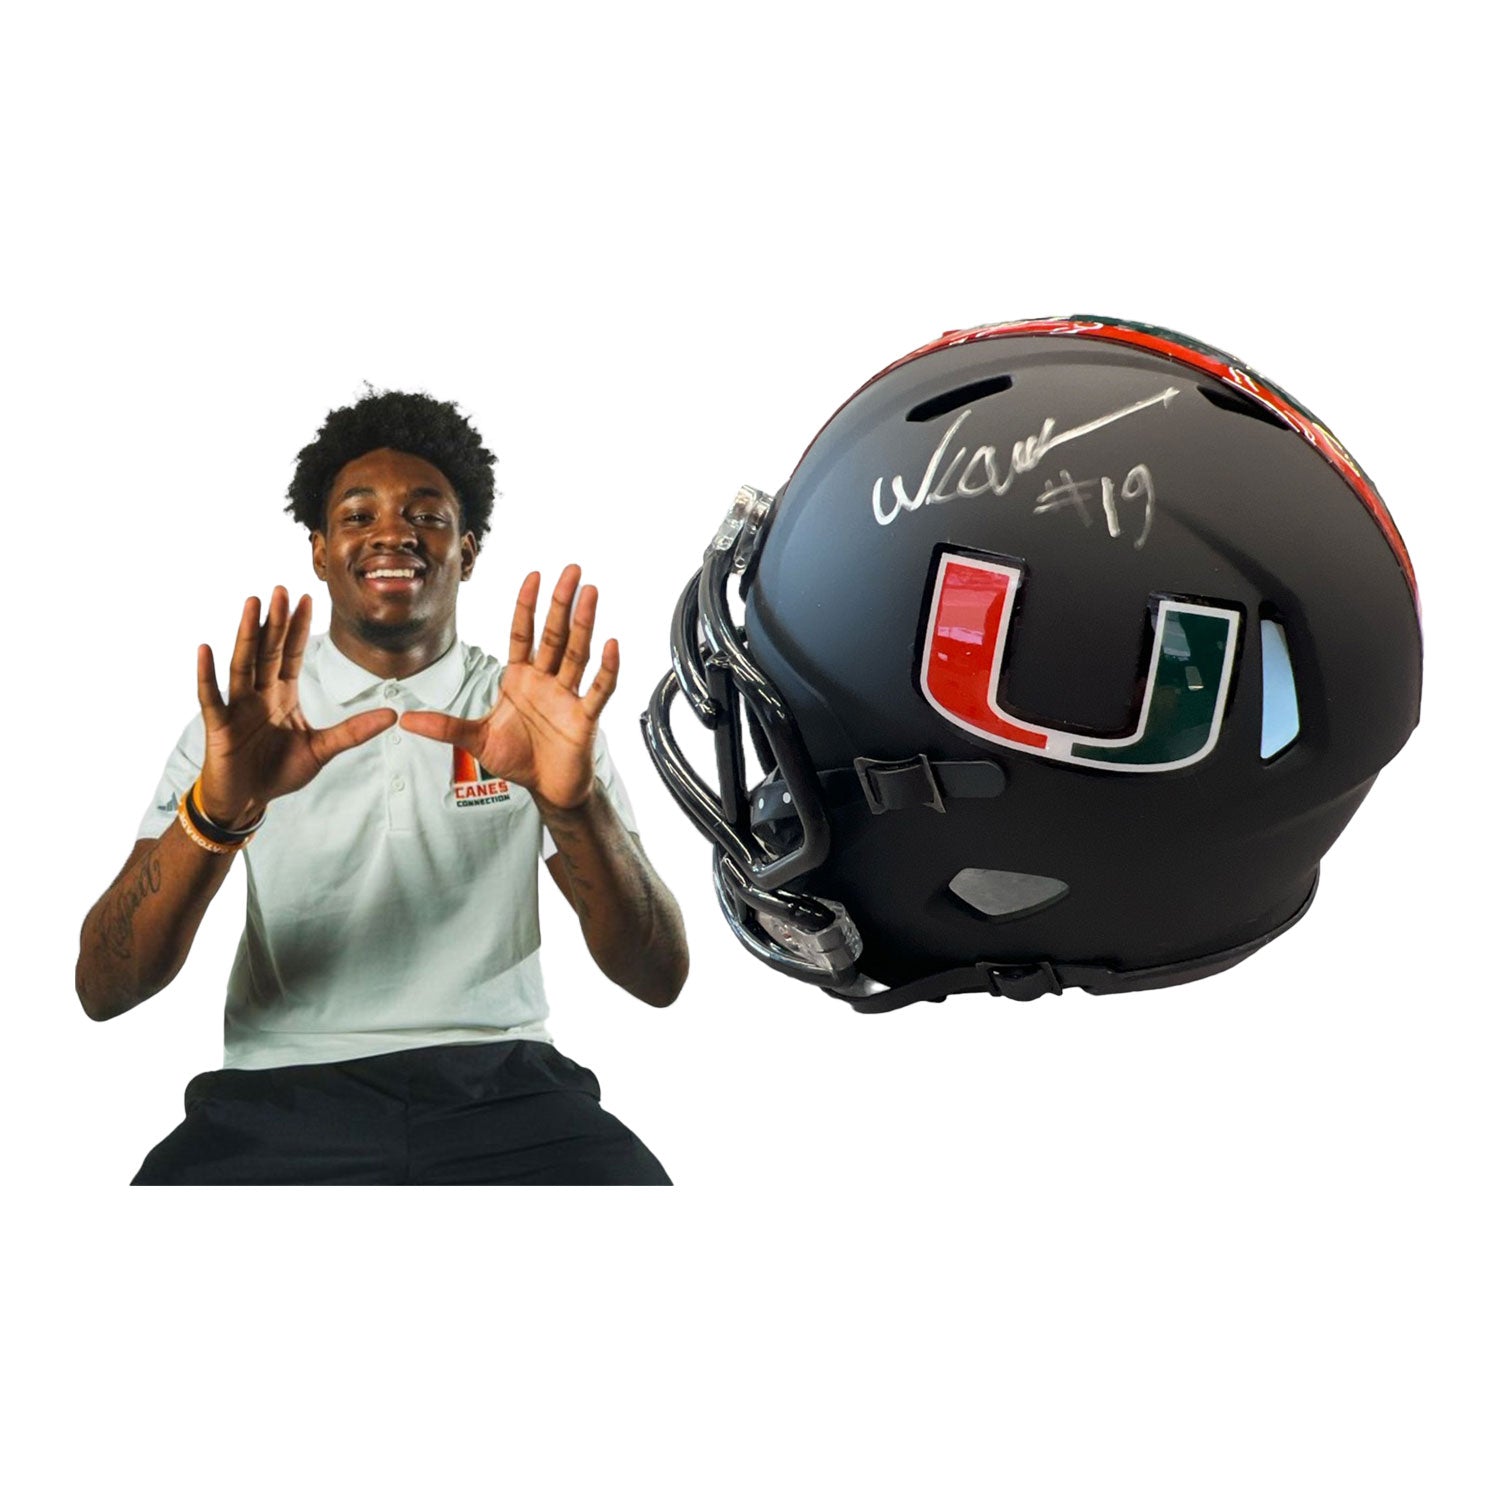 Miami Hurricanes Student Athlete #19 Ny Carr Mini Black Football Helmet - Main View